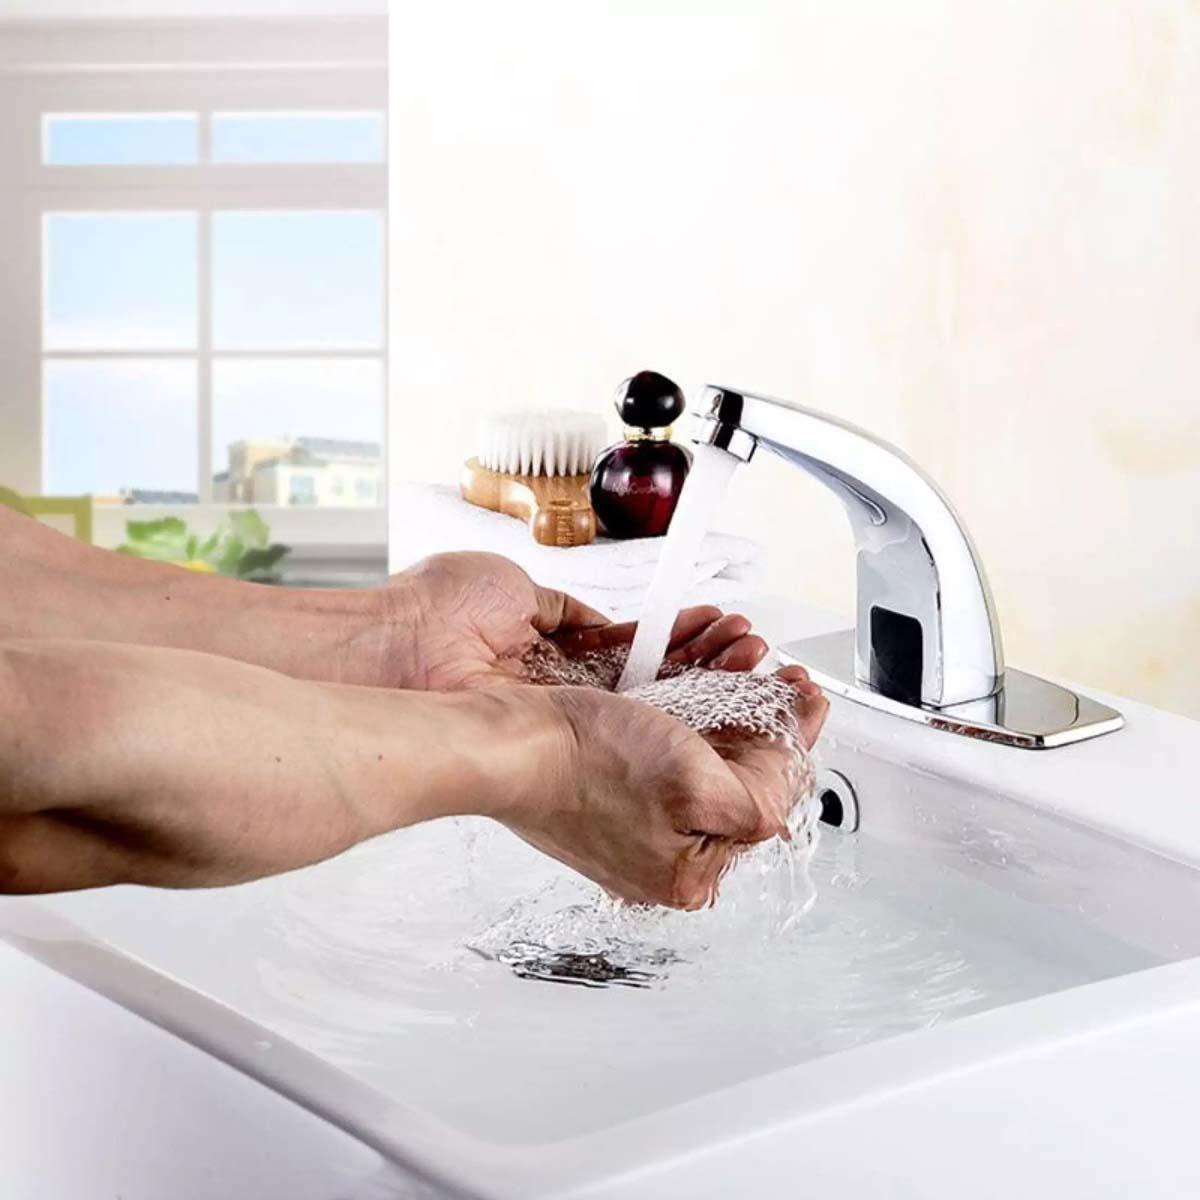 Vòi nước cảm biến trong nhà tắm.

Nguồn: kawasan.com.vn